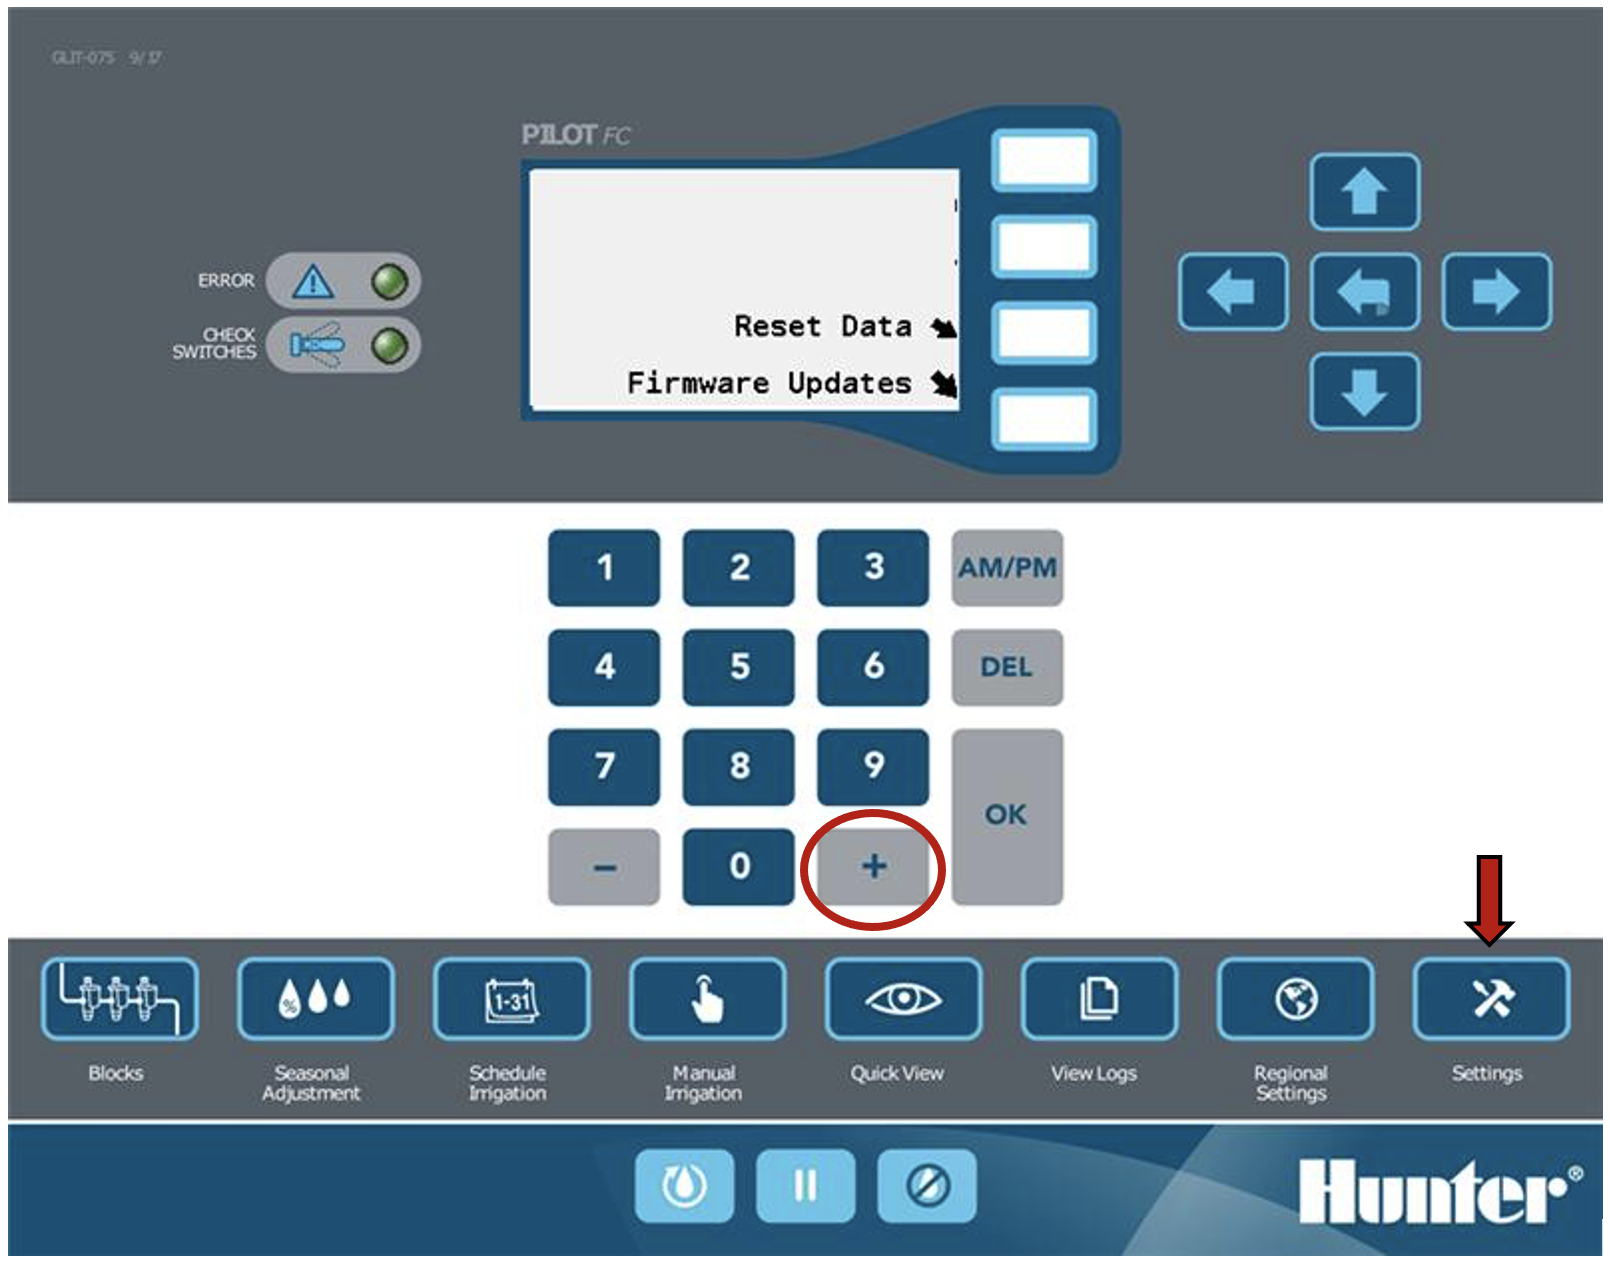 Imagen de la pantalla de la carátula que muestra el botón del signo más y el botón de configuración.